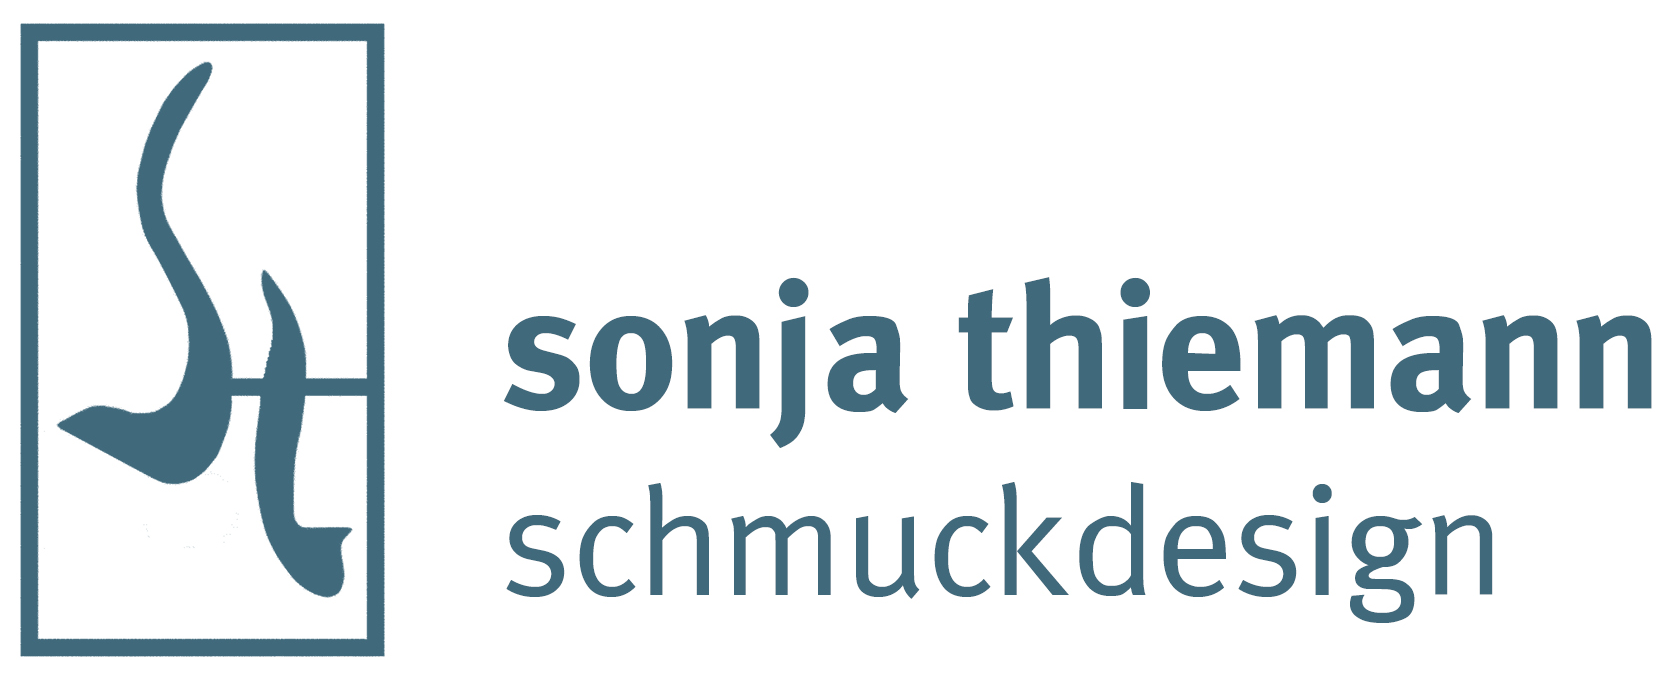 Sonja Thiemann Schmuckdesign